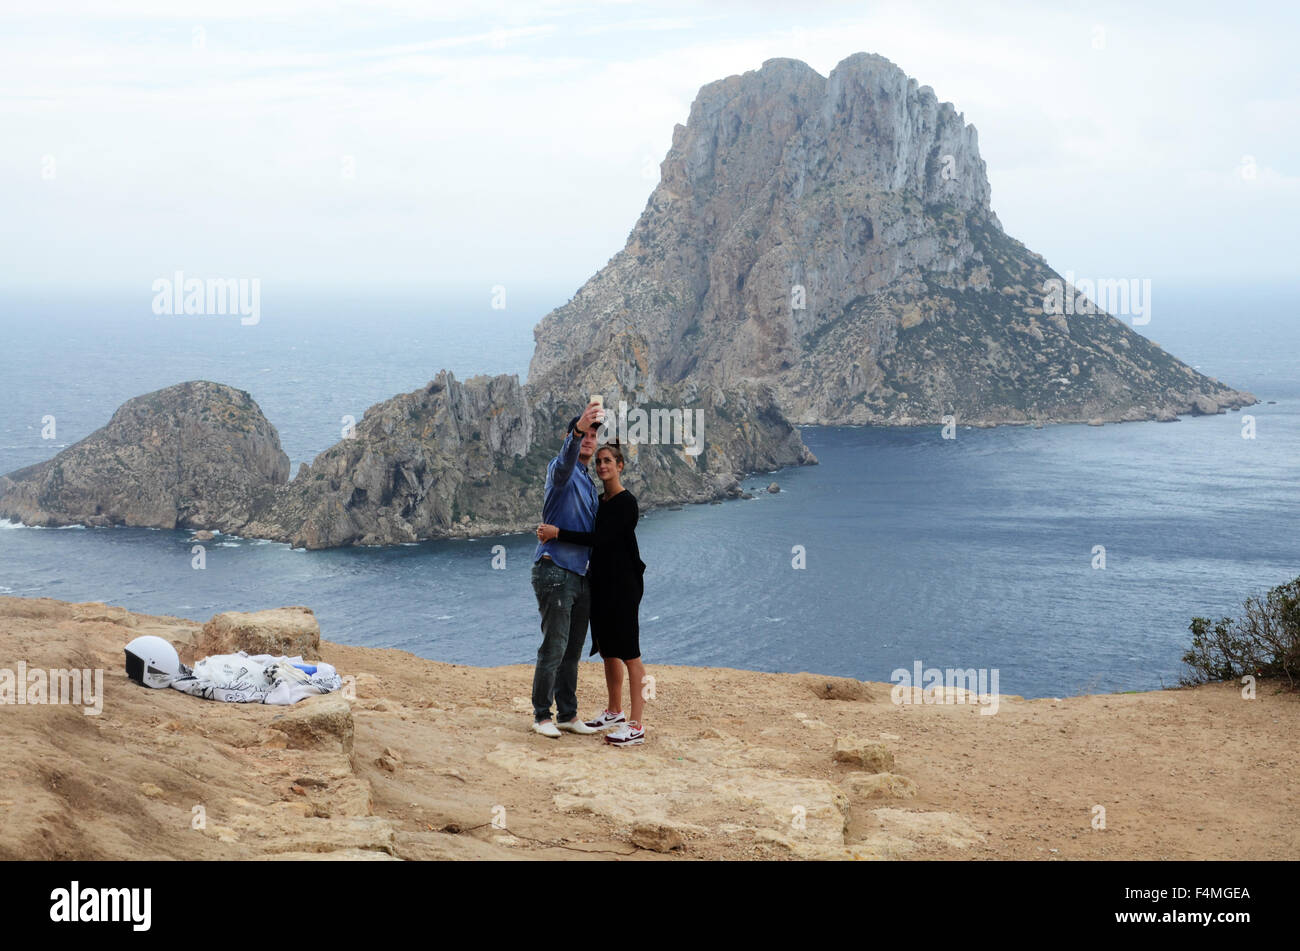 ES VEDRA, un disabitata isola di roccia si trova a 2 km al largo della costa occidentale dell'isola di Ibiza in Cala d'Hort area. Foto Stock